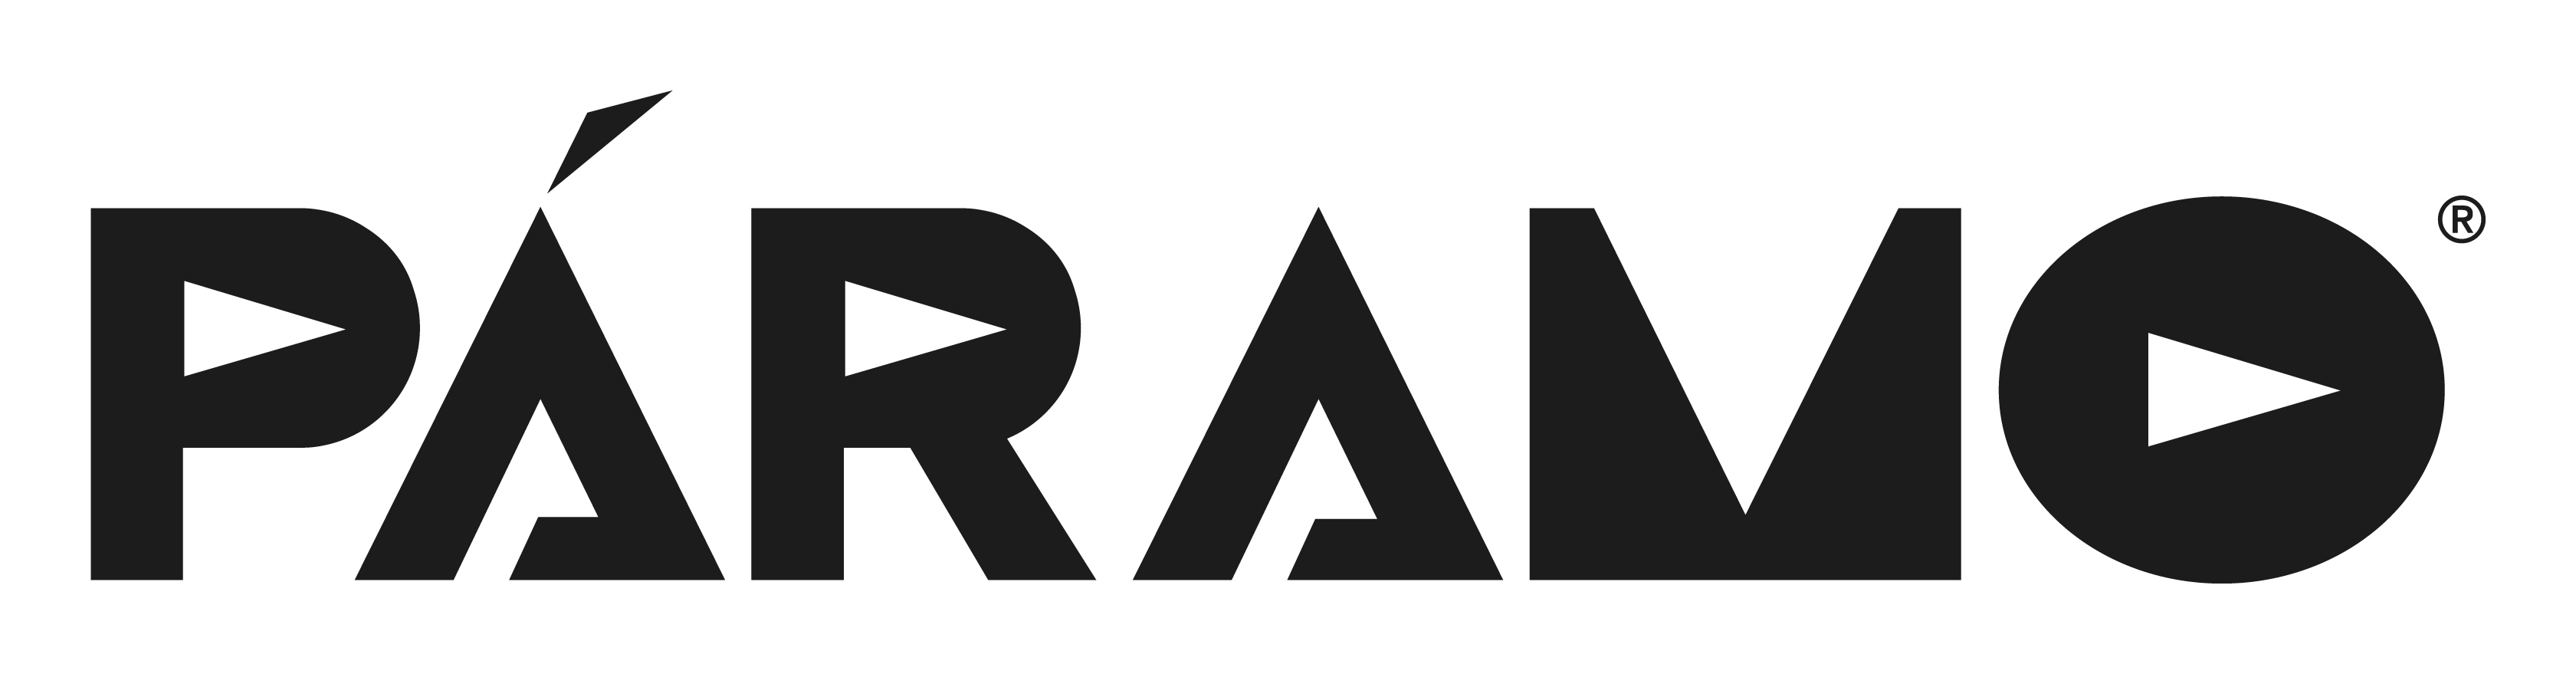 paramo-logo-2015-black-72ppi.jpg